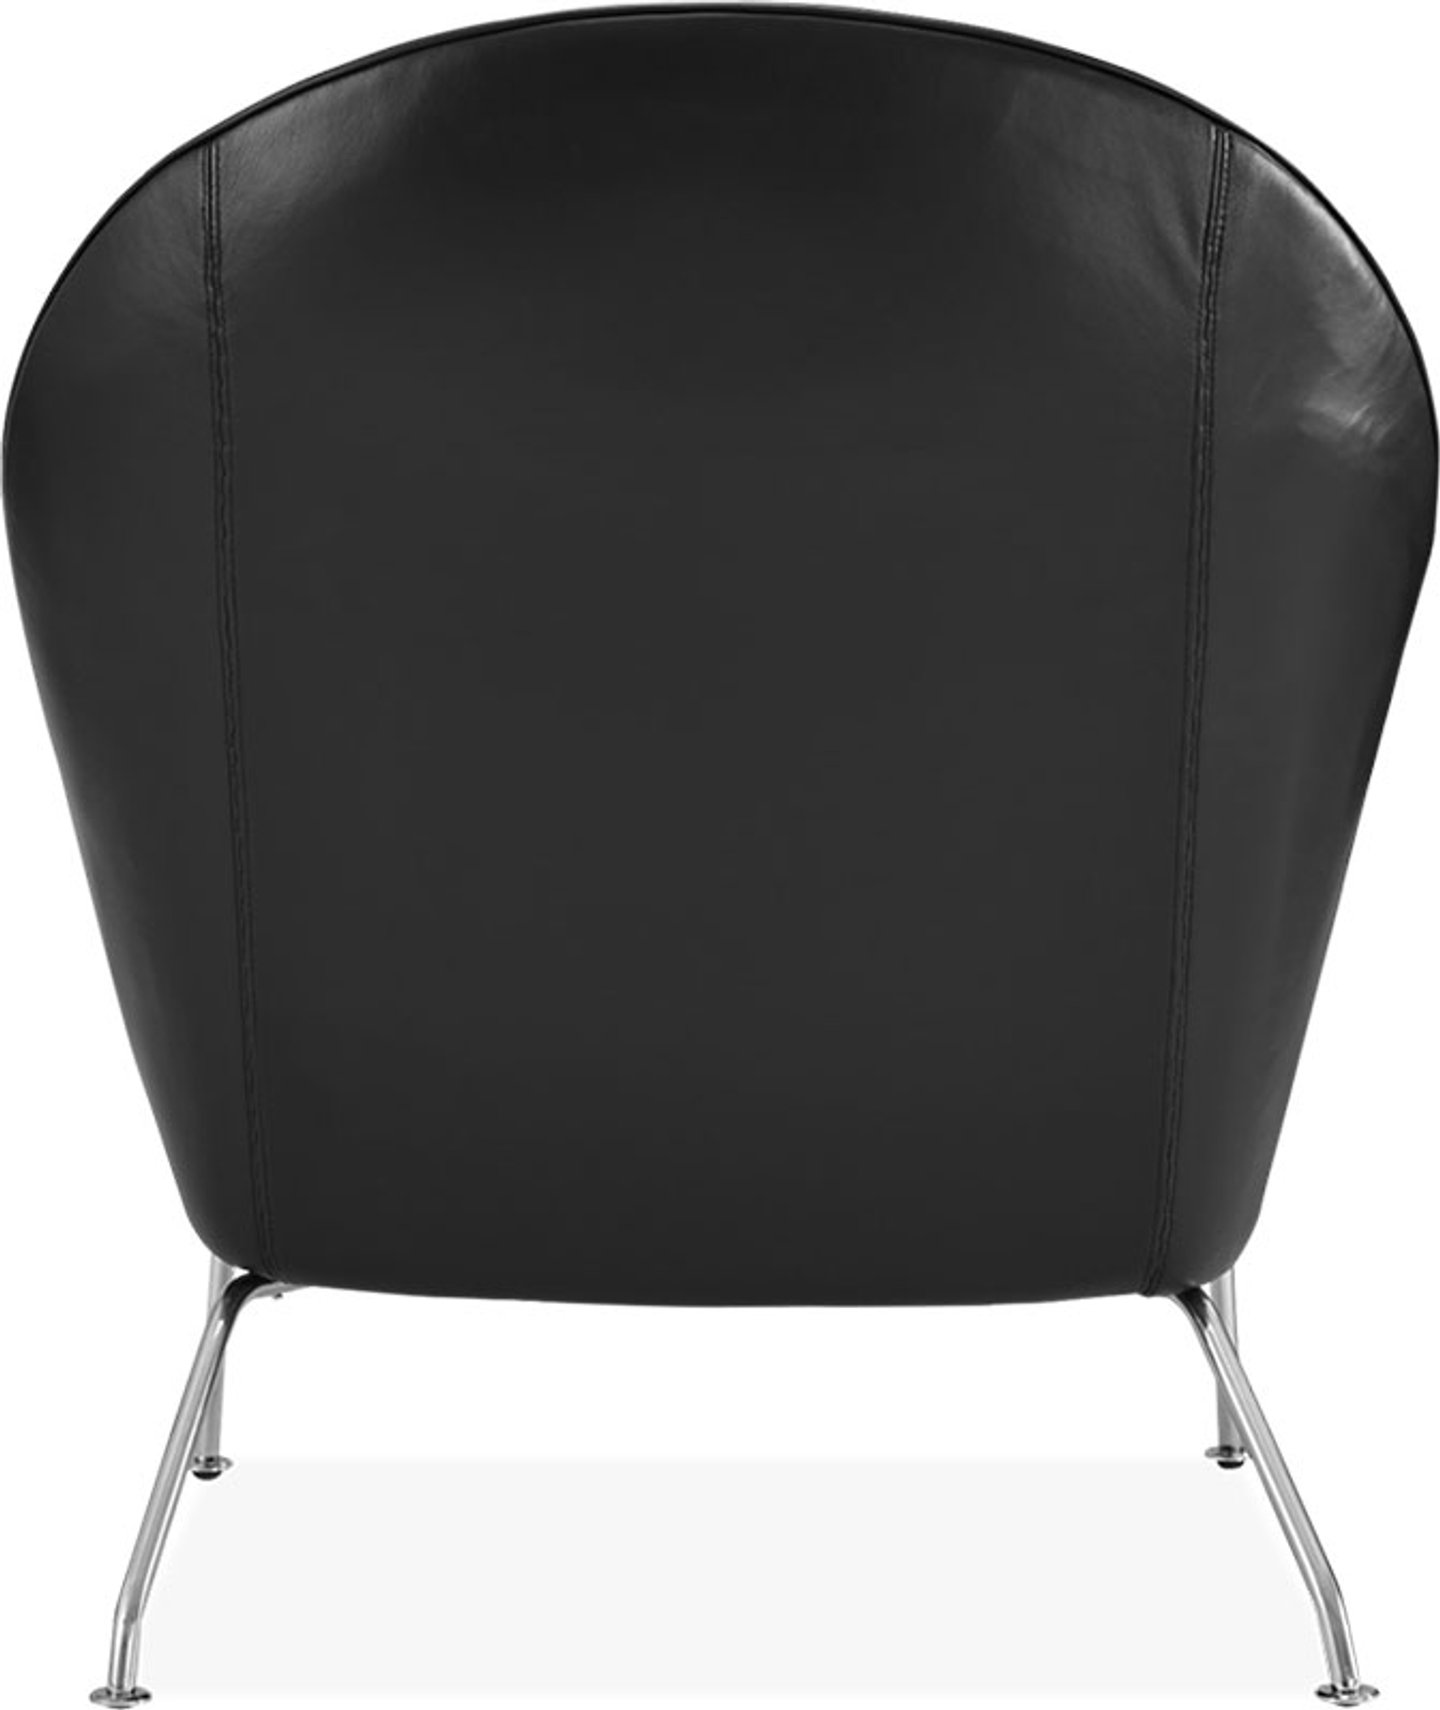 Silla Oculus Premium Leather/Black  image.